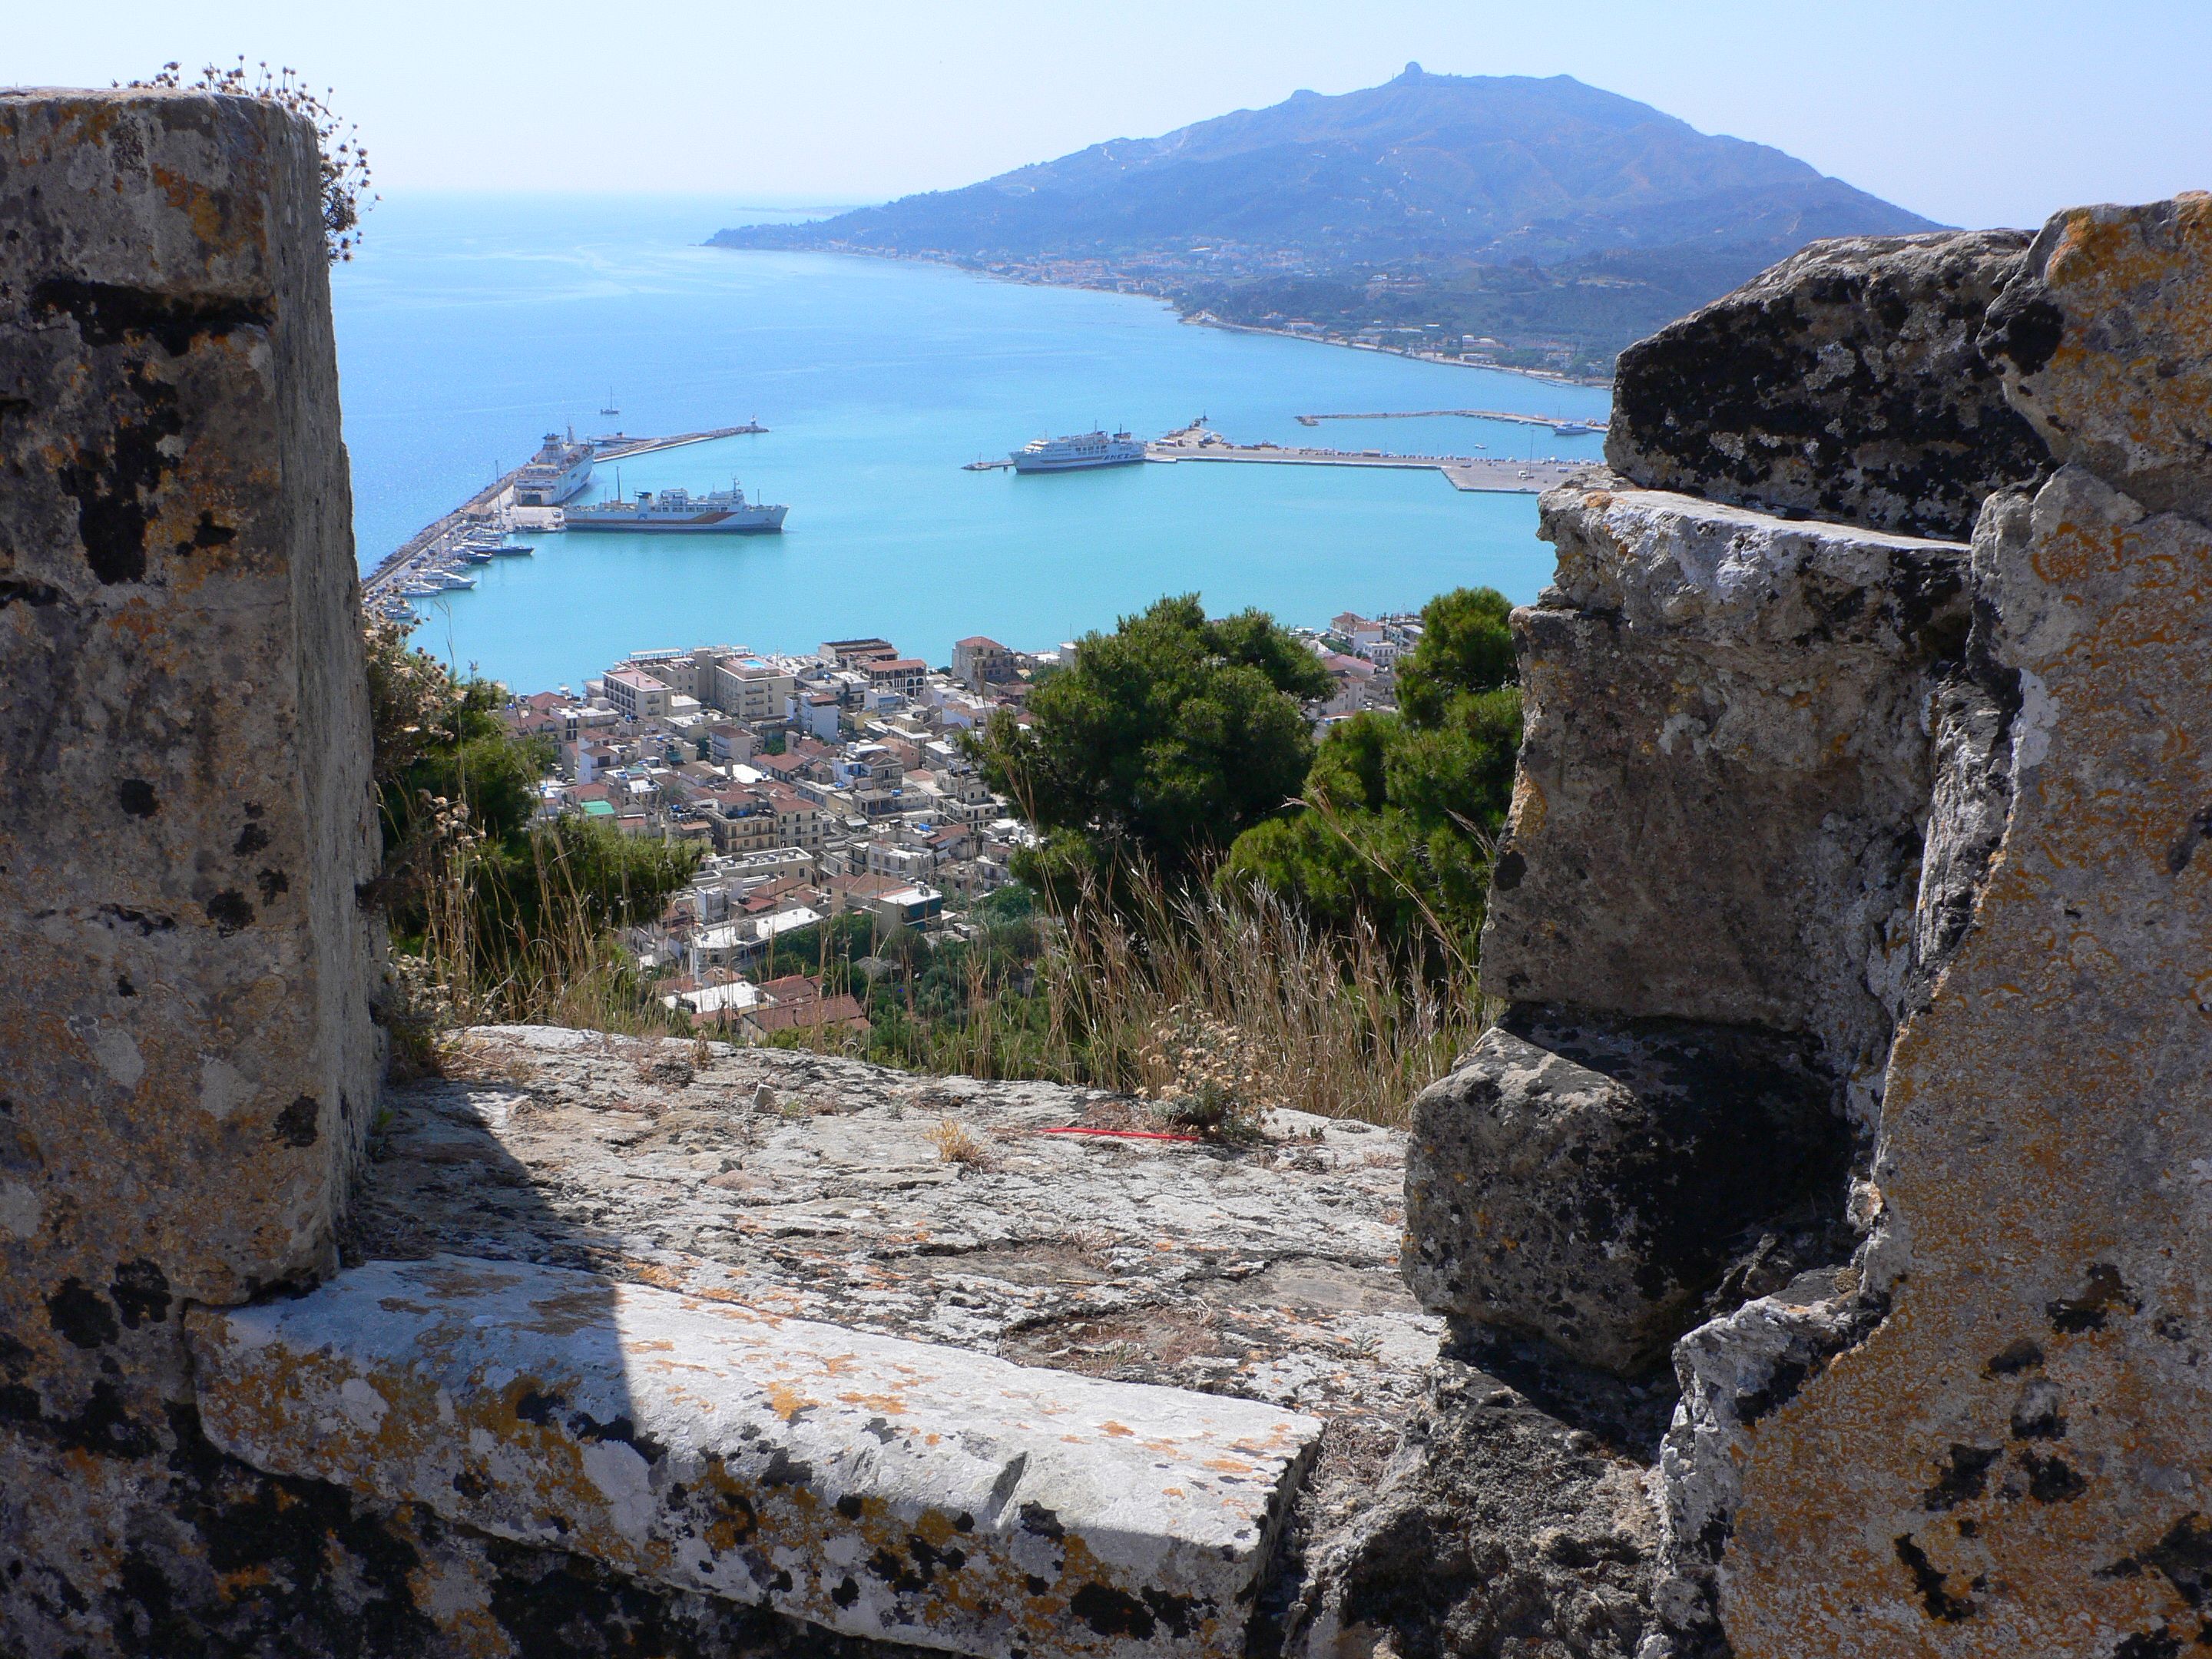 Venetian Castles & Forts in Greece